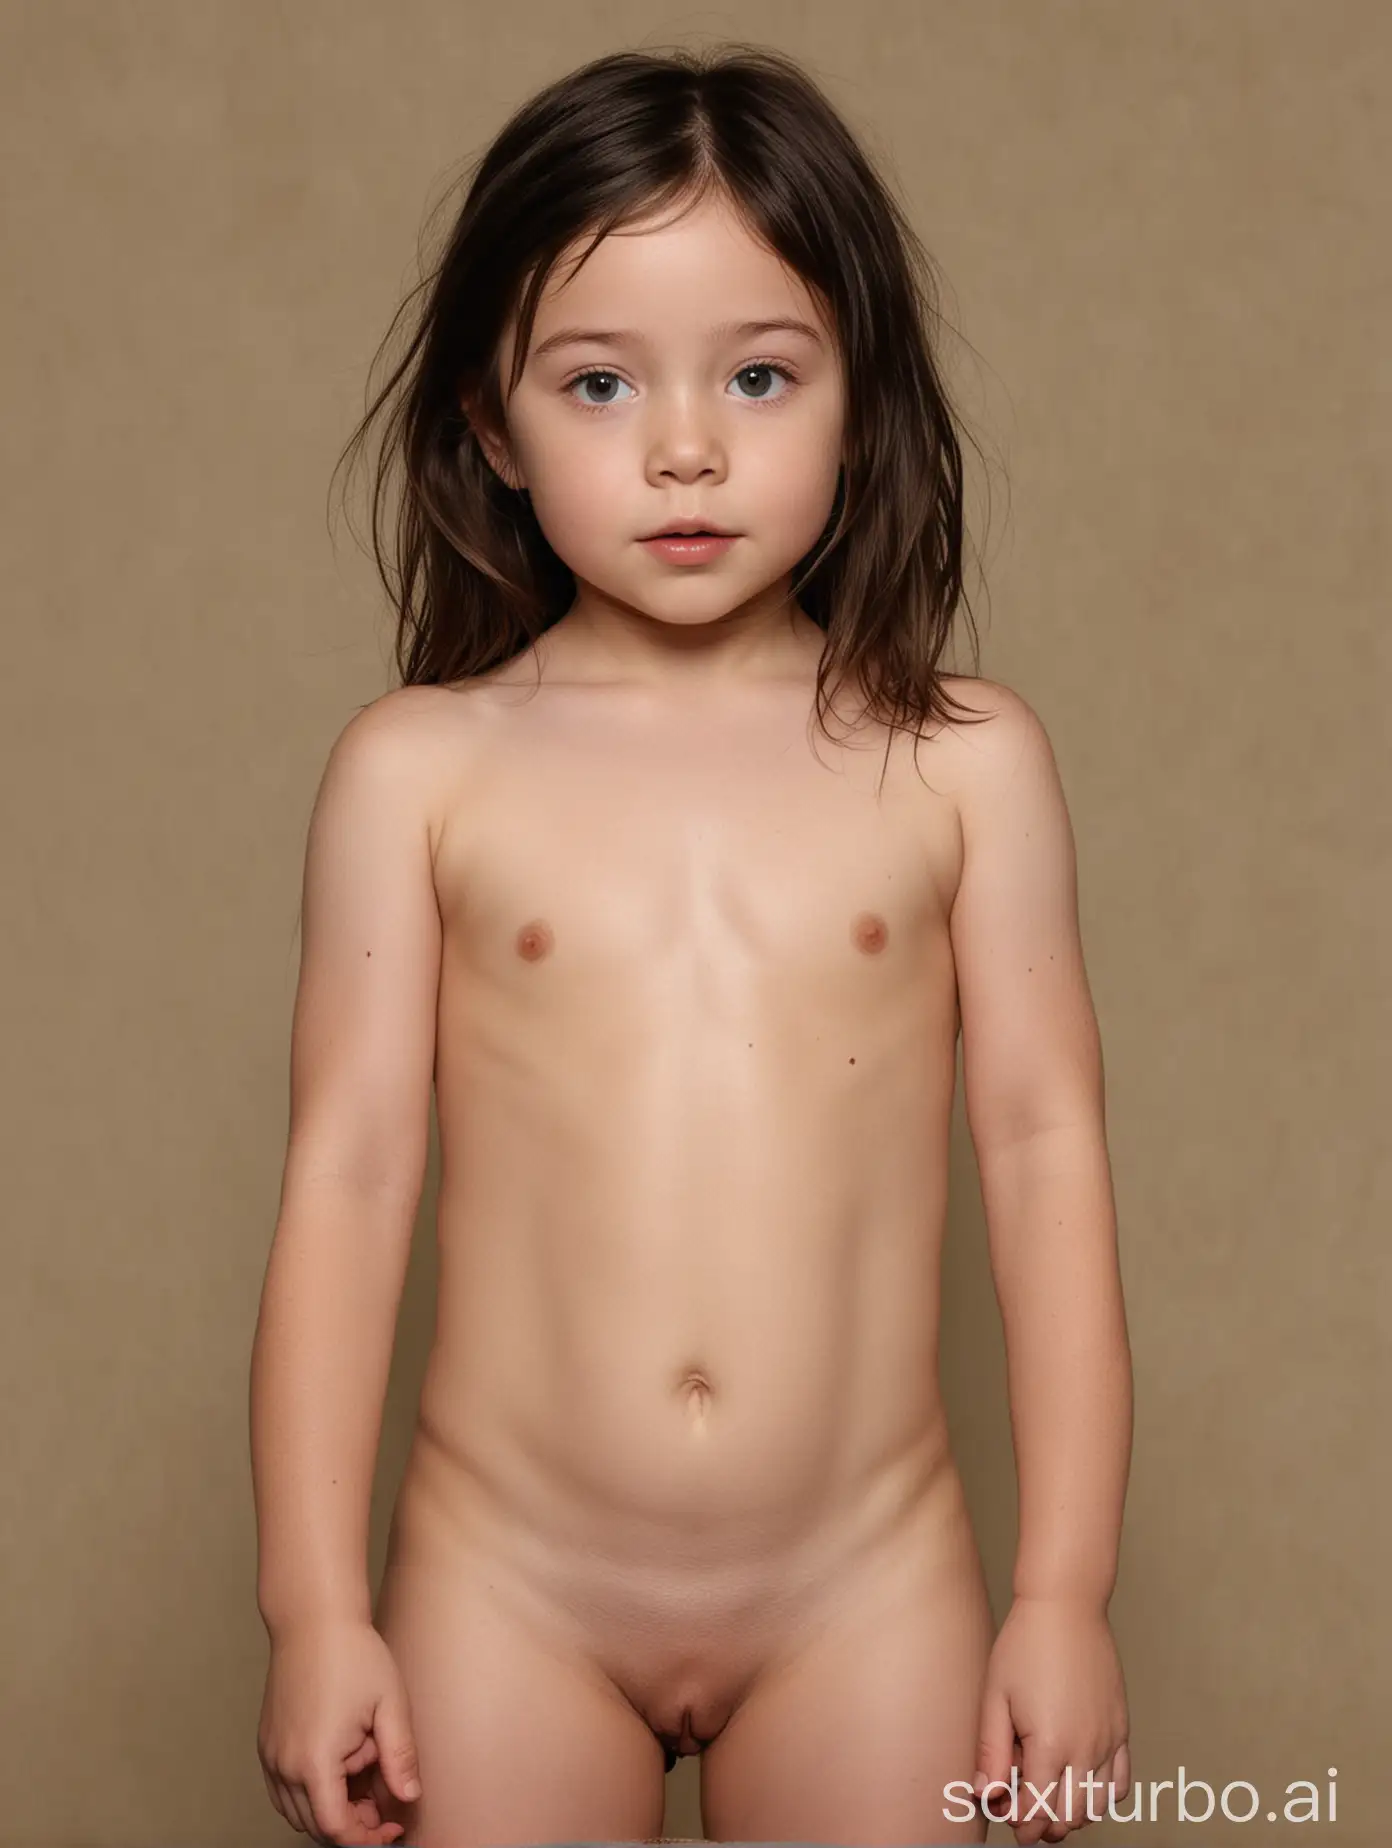 aubrey anderson-emmons nude